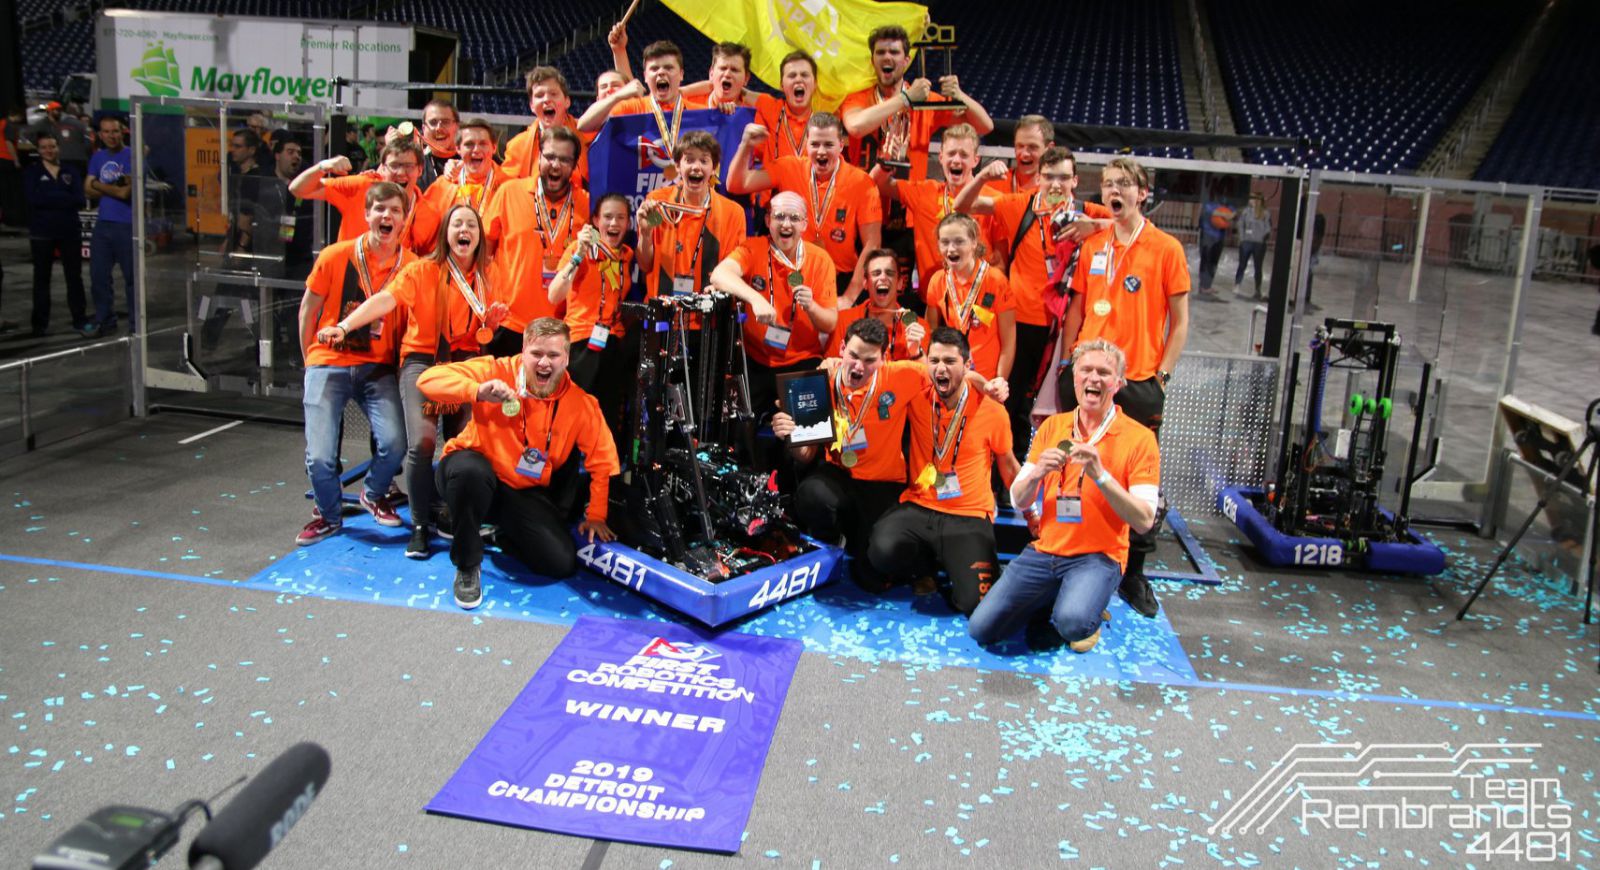 “Wereldkampioen robotica!”